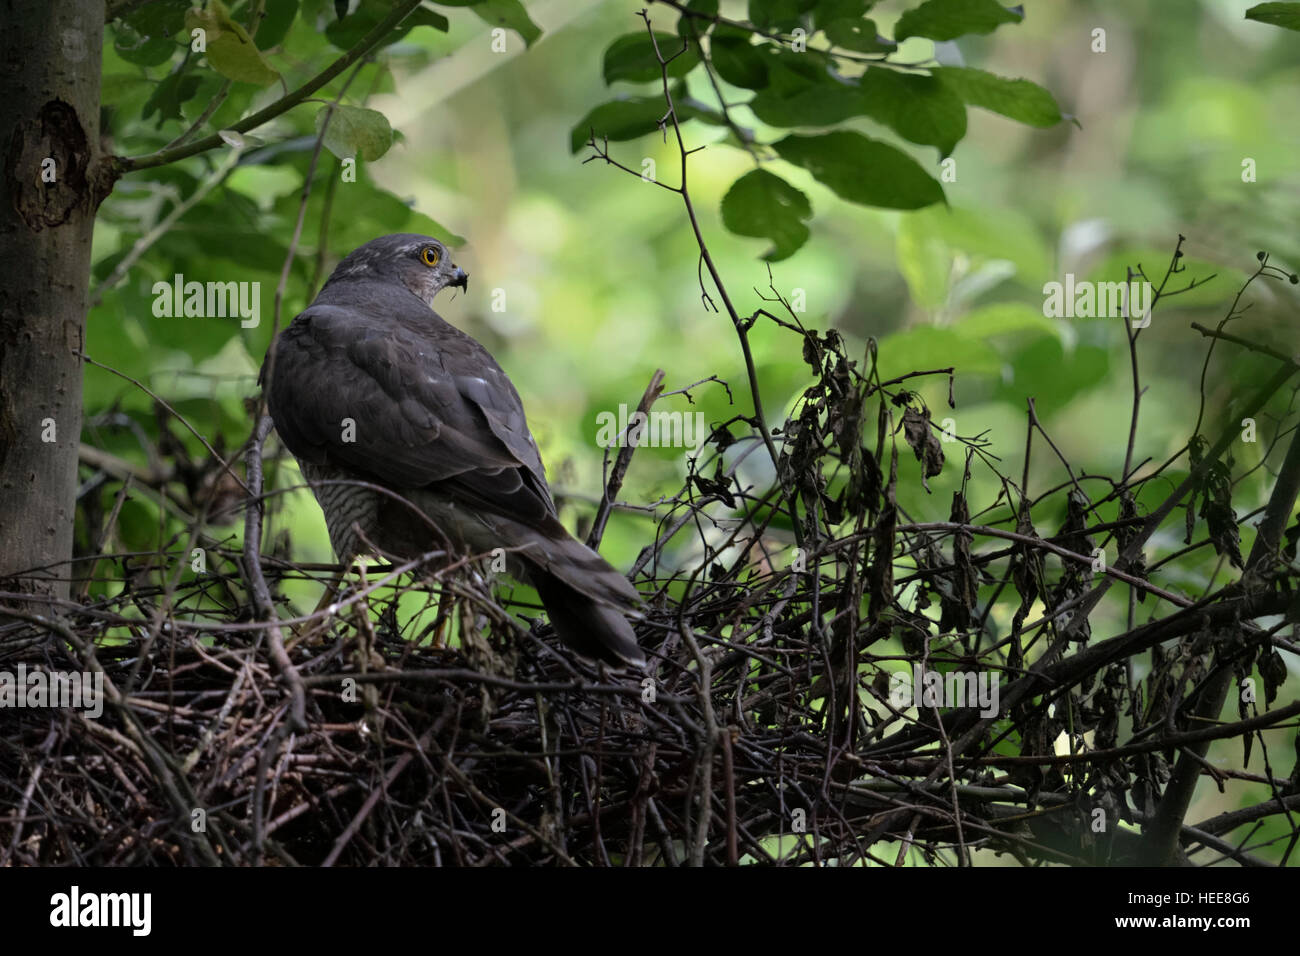 Sparviero ( Accipiter nisus ), femmina adulta, sorge sul bordo del suo nido d'aquila, guardando intorno con cautela, vista dal retro. Foto Stock